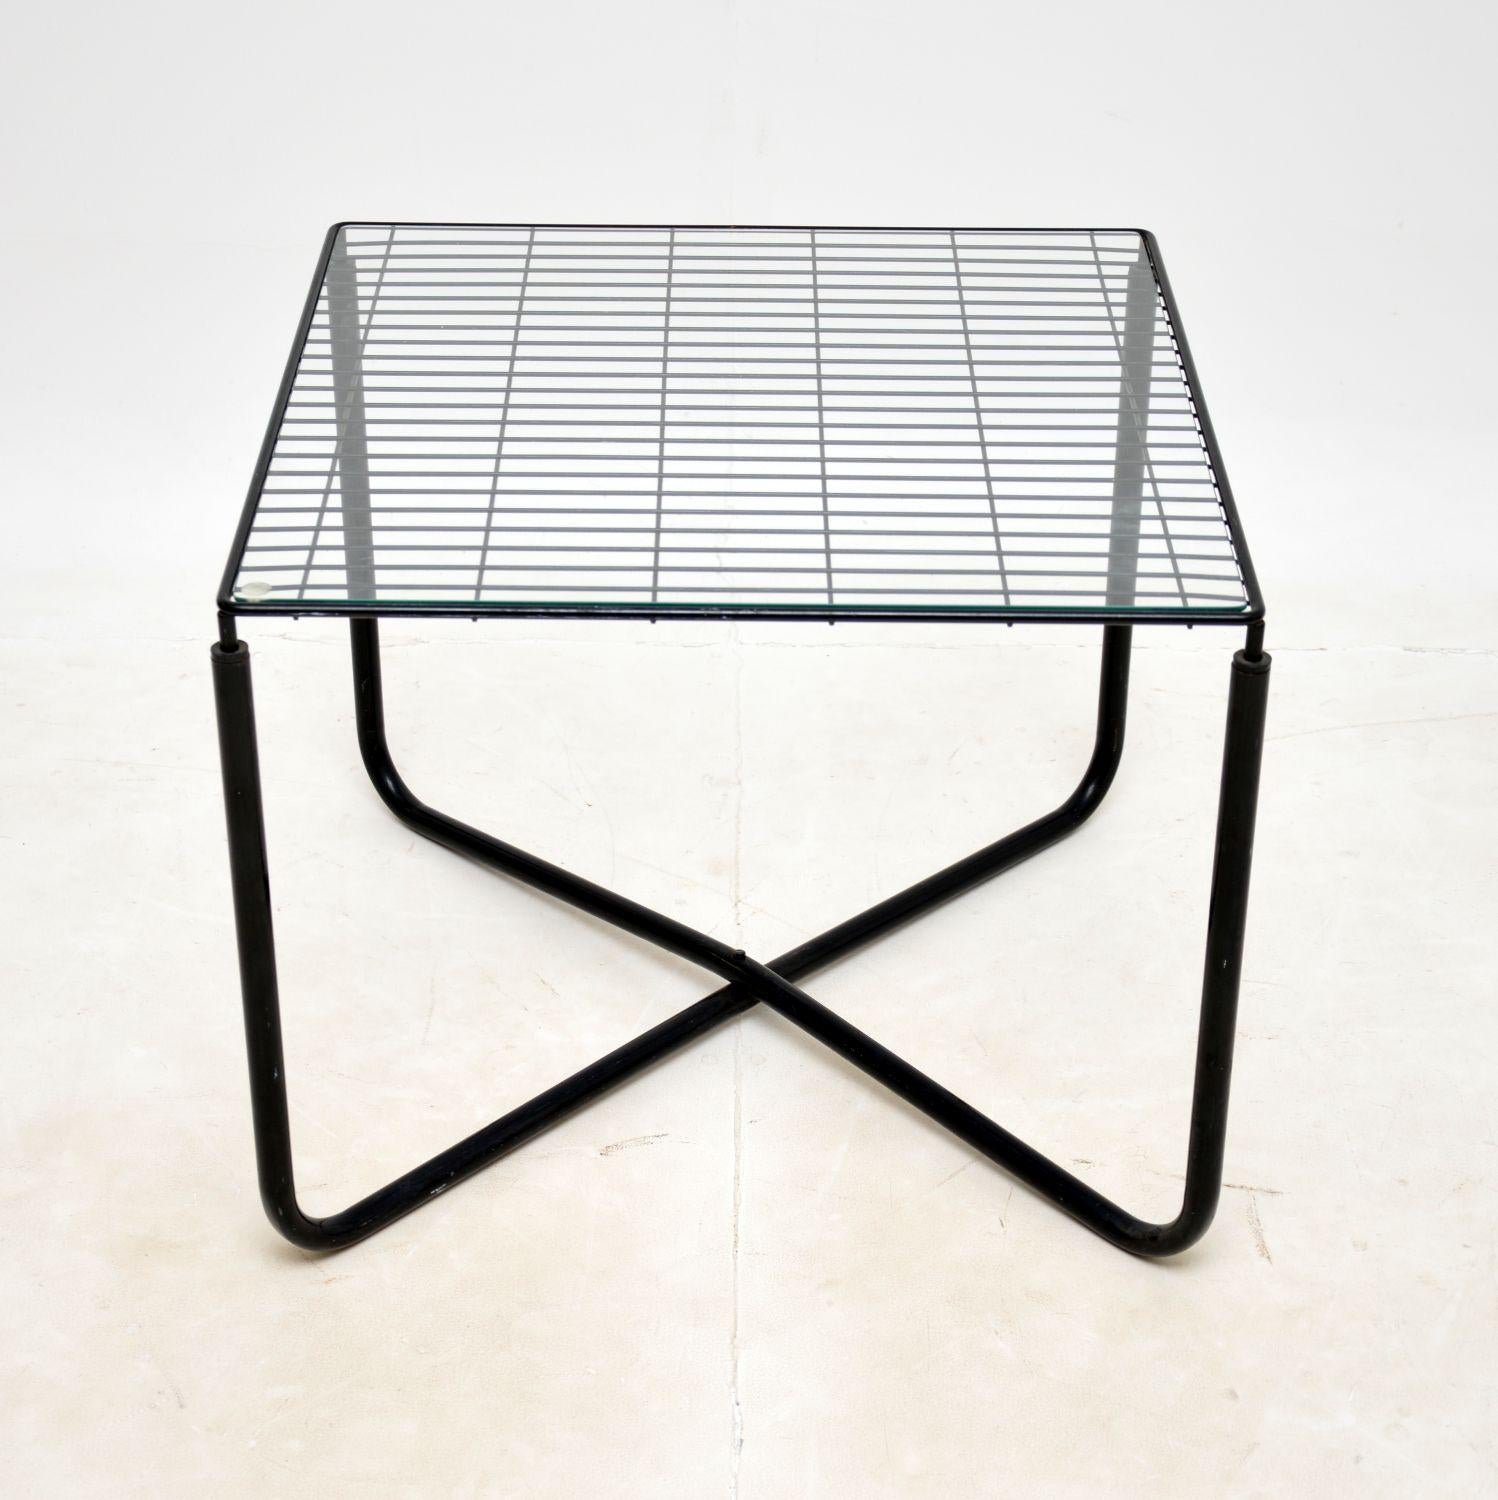 Cette table basse vintage Jarpen des années 1980, créée par Niels Gammelgaard pour Ikea, est un modèle élégant et emblématique.

D'une excellente qualité, il est doté d'un magnifique cadre en acier ébonisé et d'un plateau en verre transparent